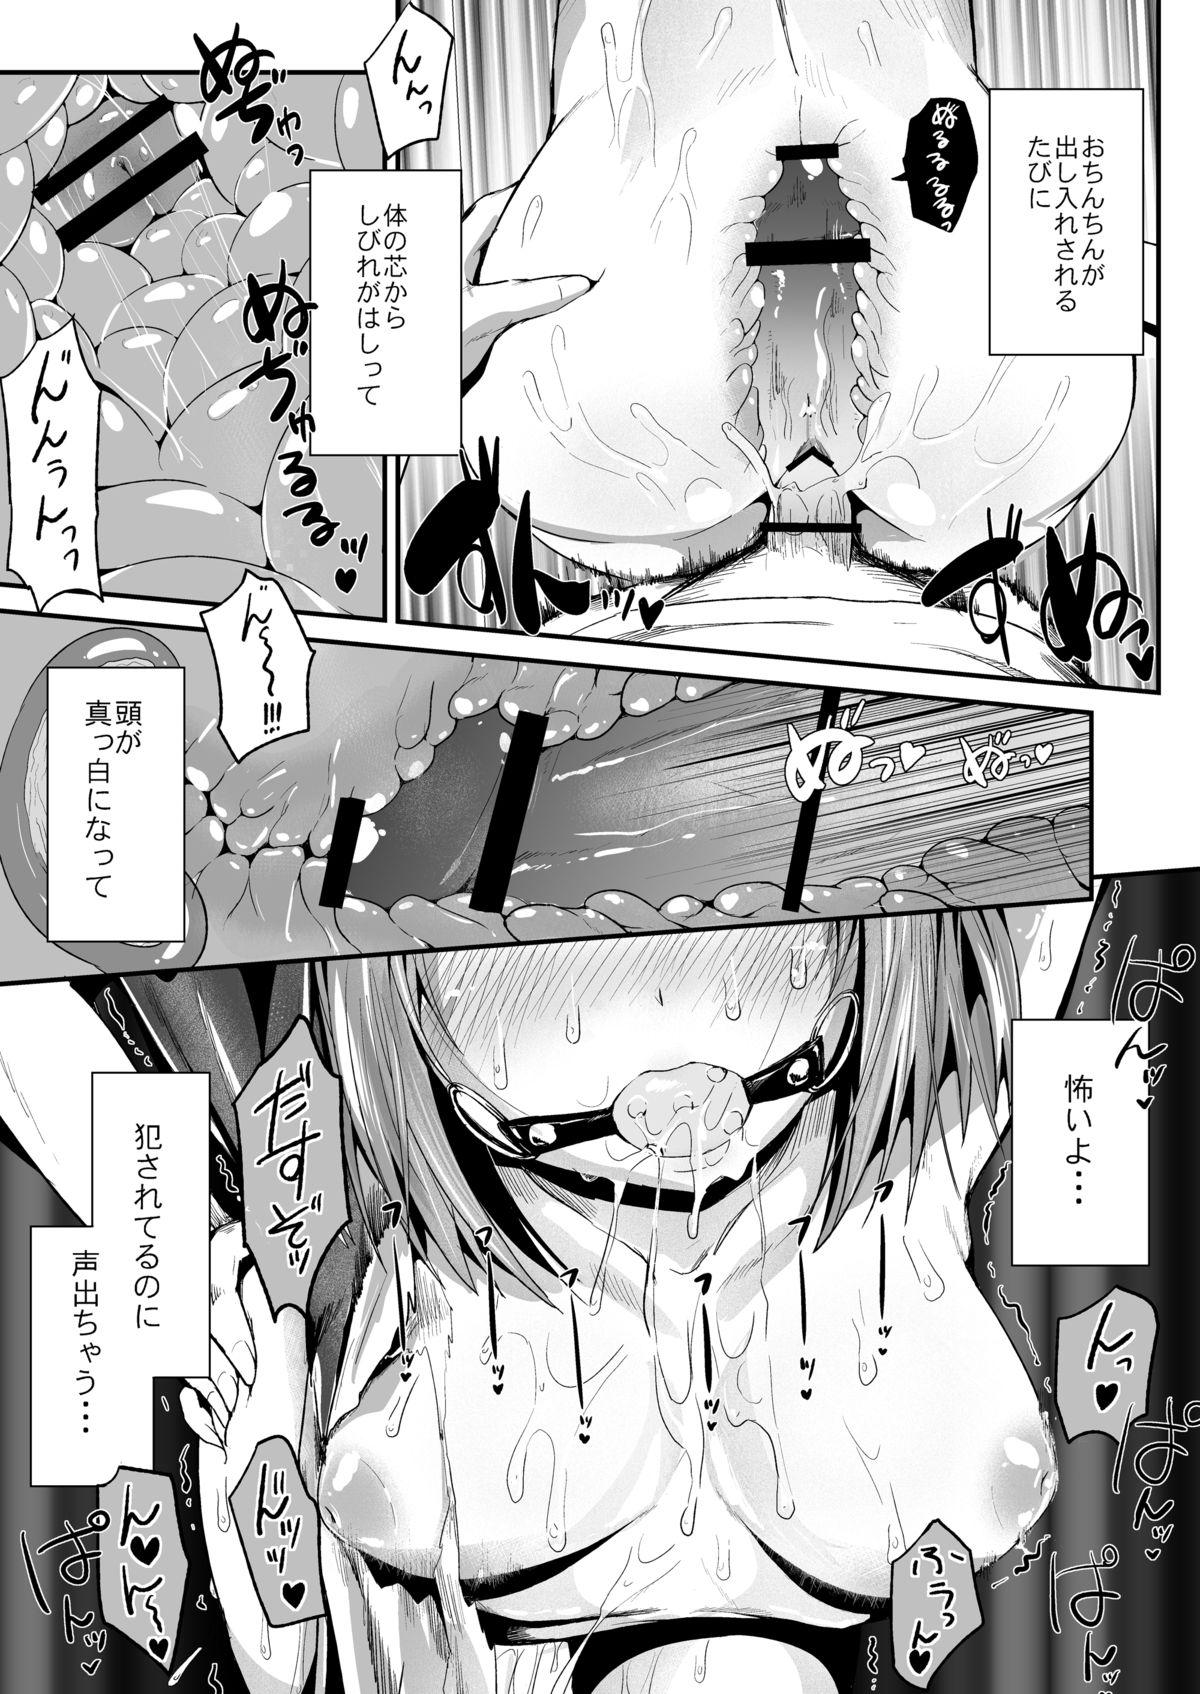 Eating Chi-chan, Ochiru - Hataraku maou sama Boobs - Page 11